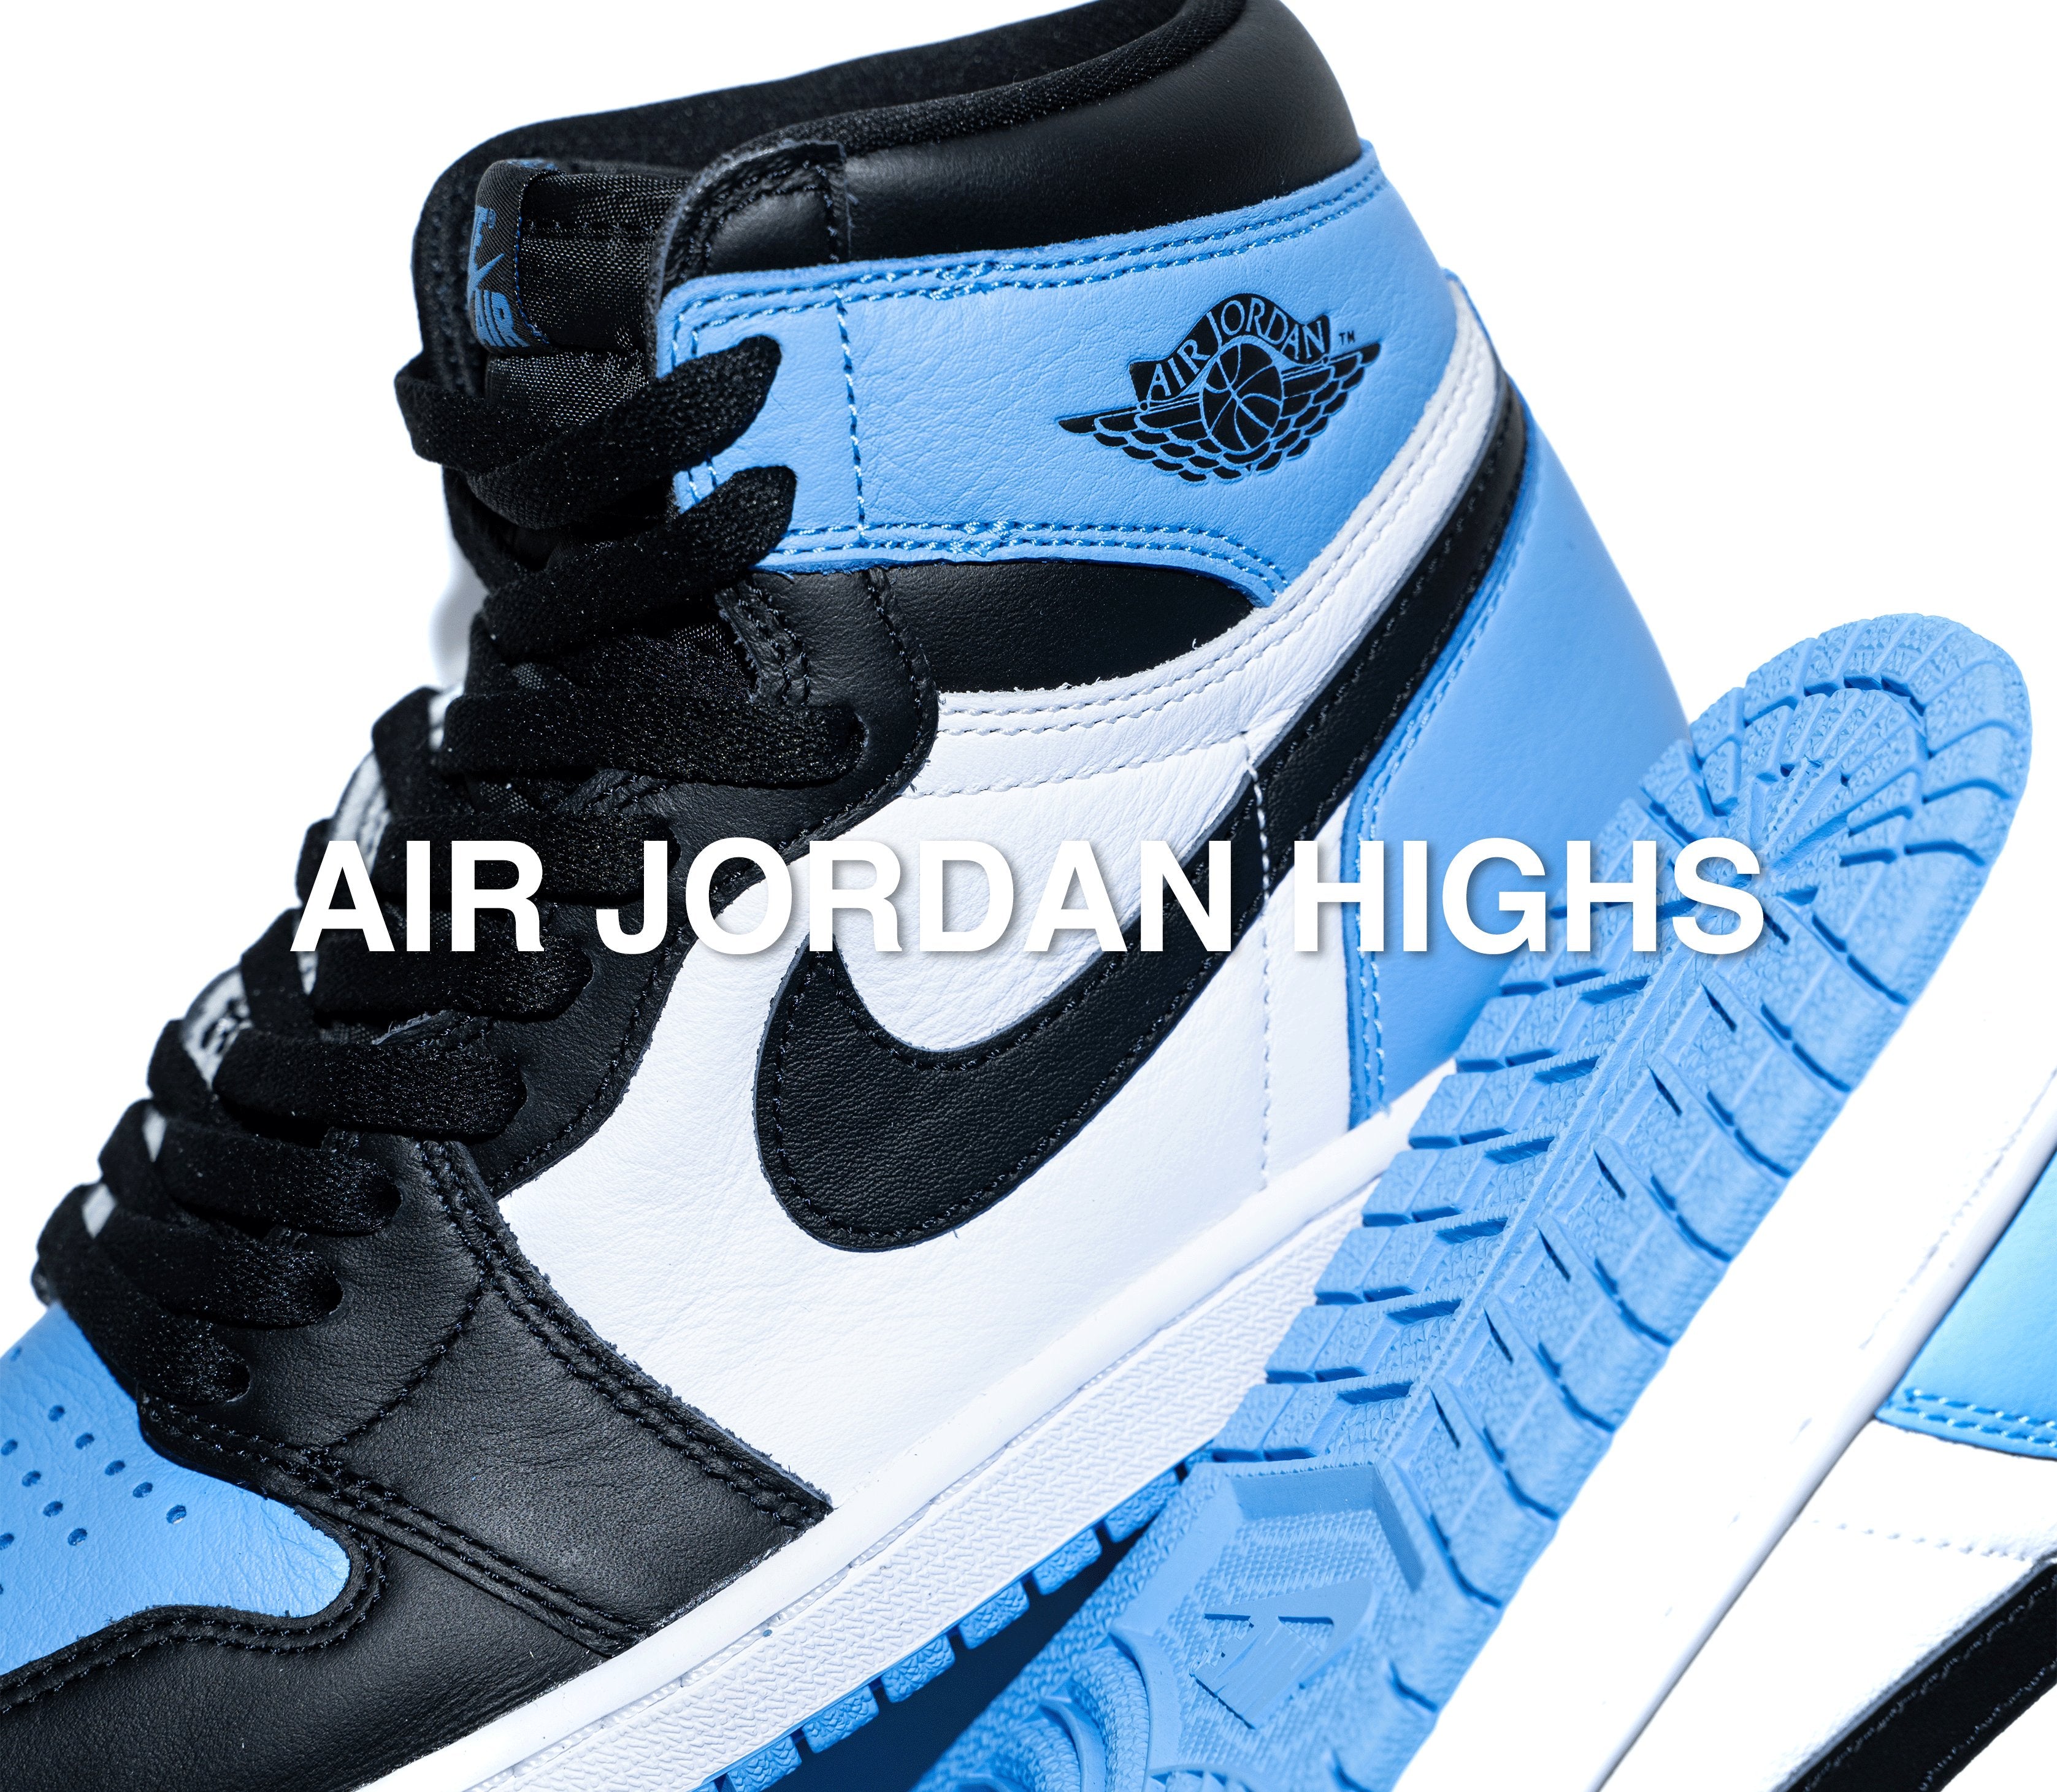 Buy Air Jordan Highs Online